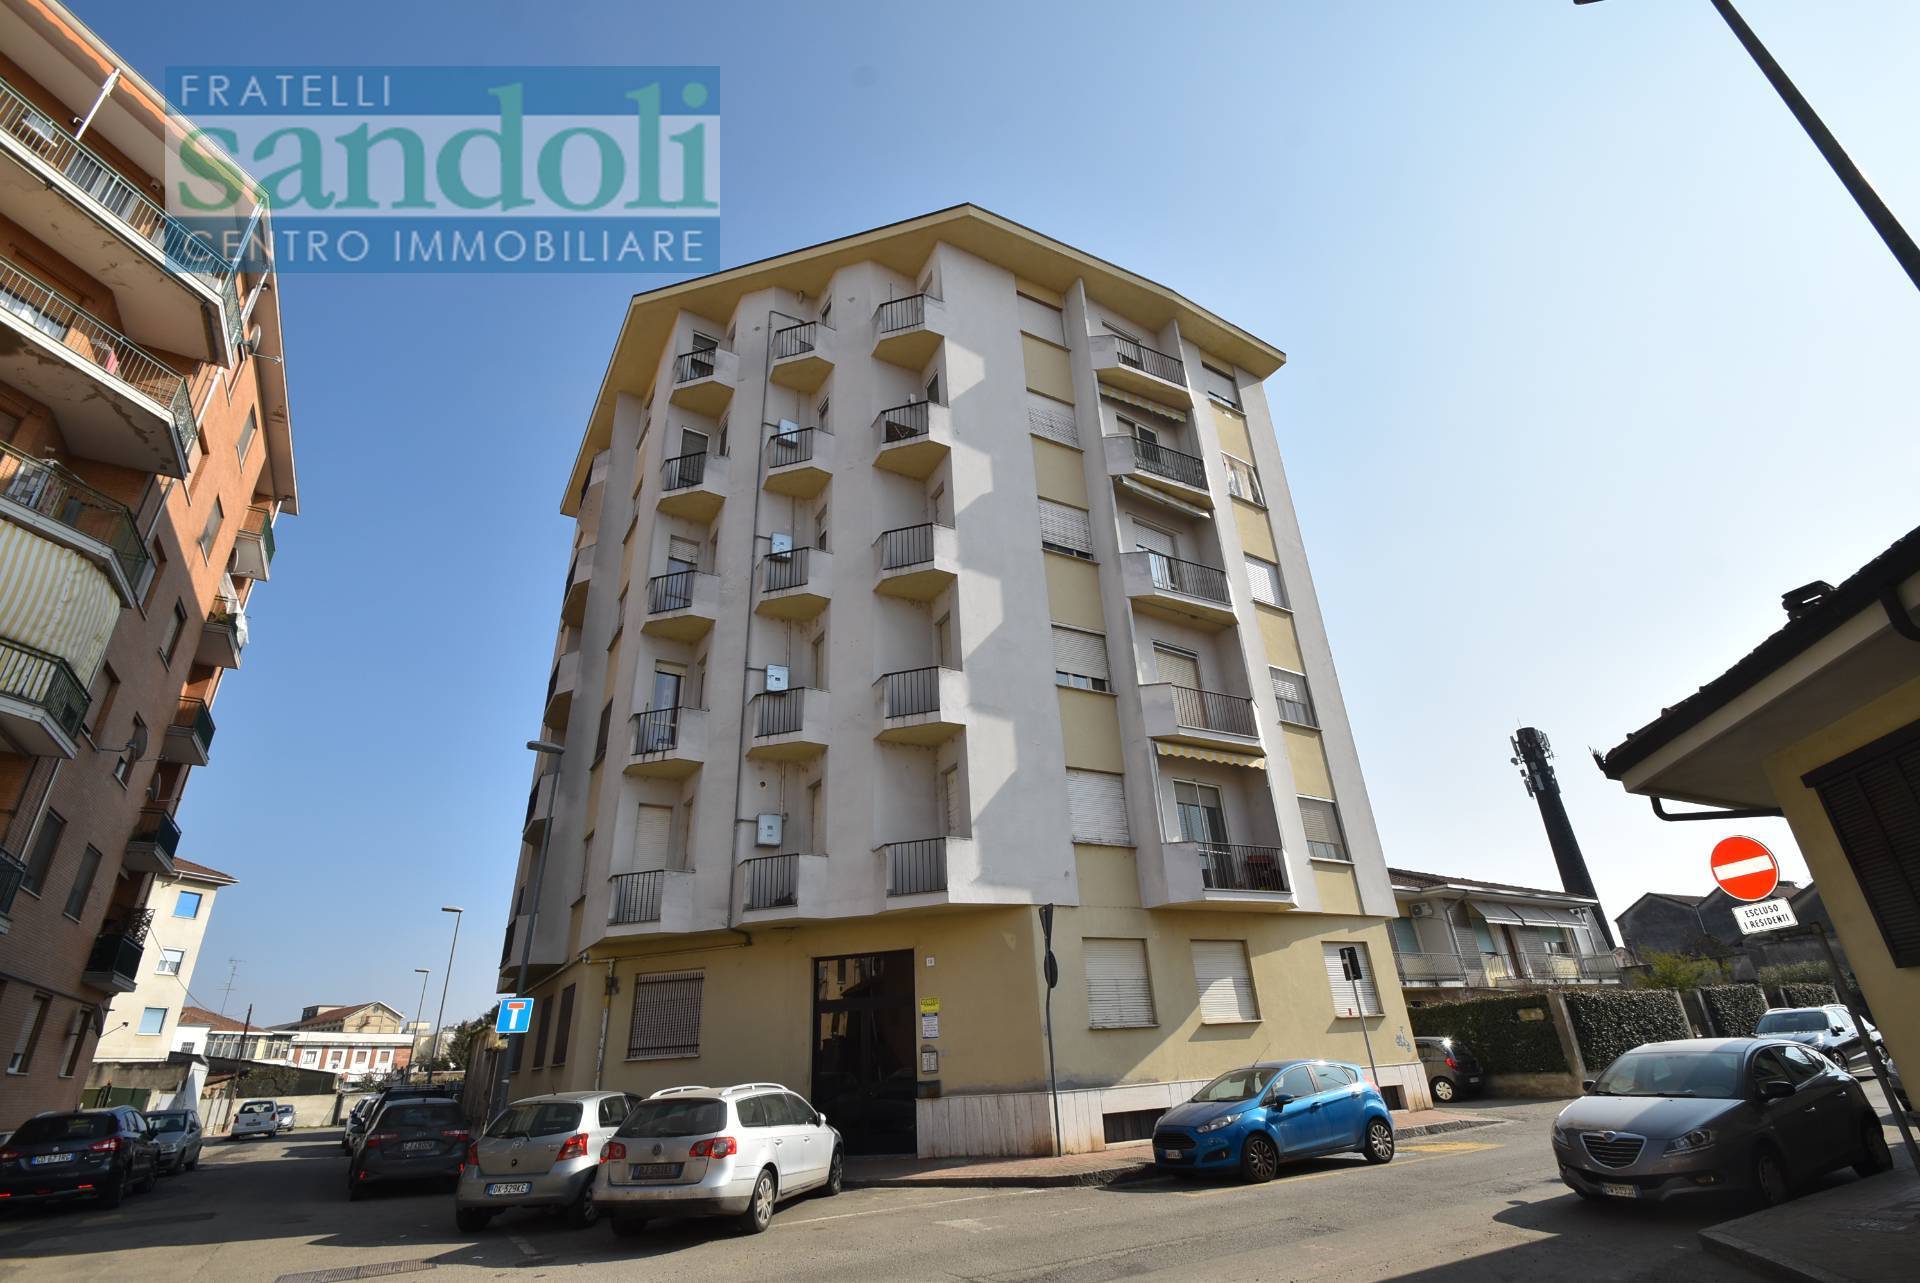 Appartamento in vendita a Vercelli, 3 locali, zona Località: Canad?, prezzo € 65.000 | PortaleAgenzieImmobiliari.it